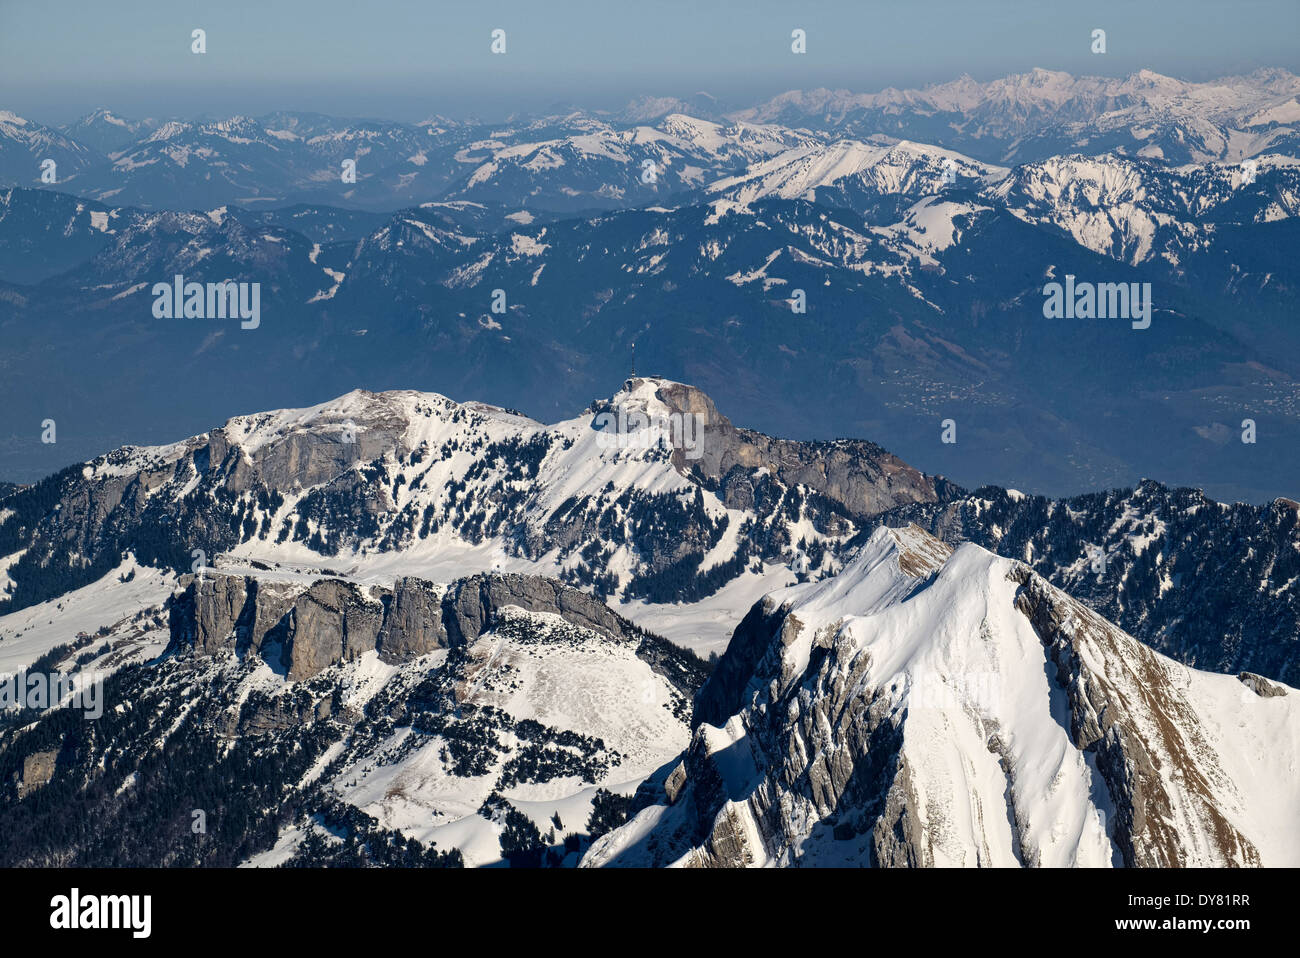 Switzerland, Canton of Appenzell Ausserrhoden, Appenzell Alps, View to Hoher Kasten mountain Stock Photo